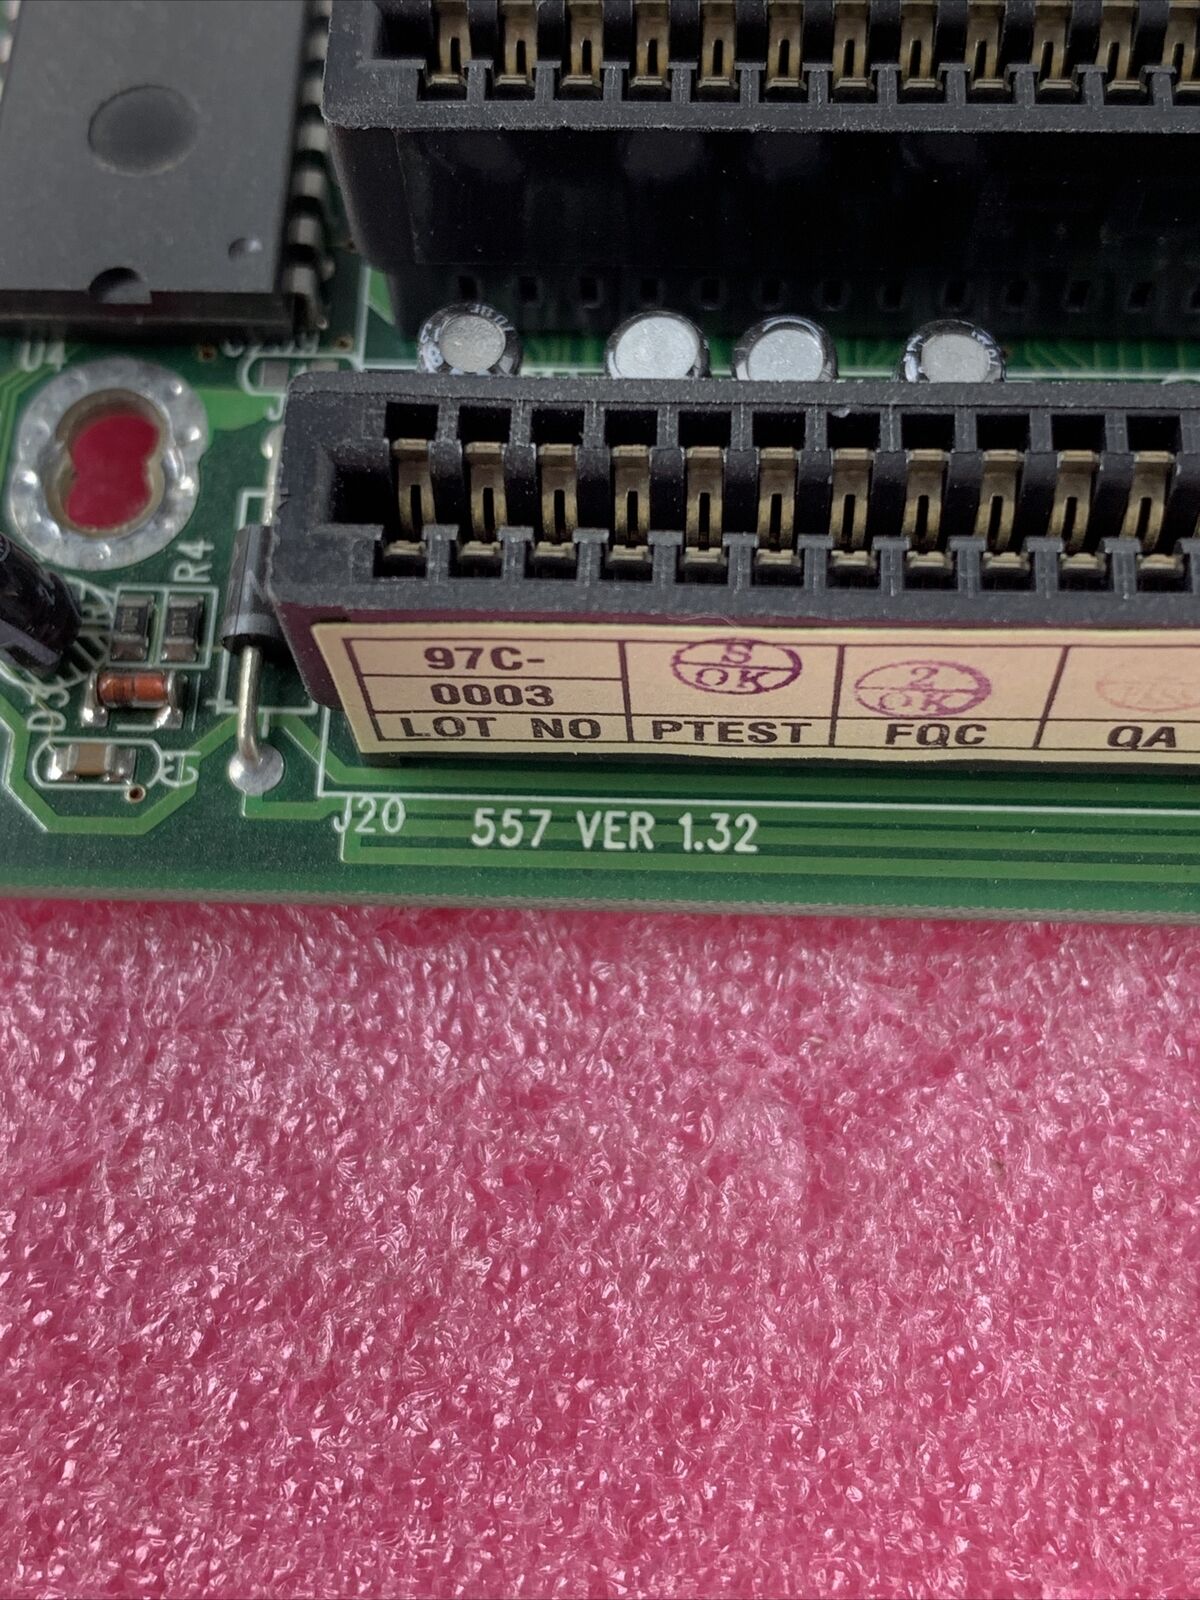 Shuttle 557 v1.32 Socket 7 Motherboard Intel Pentium 166MHz 64MB RAM